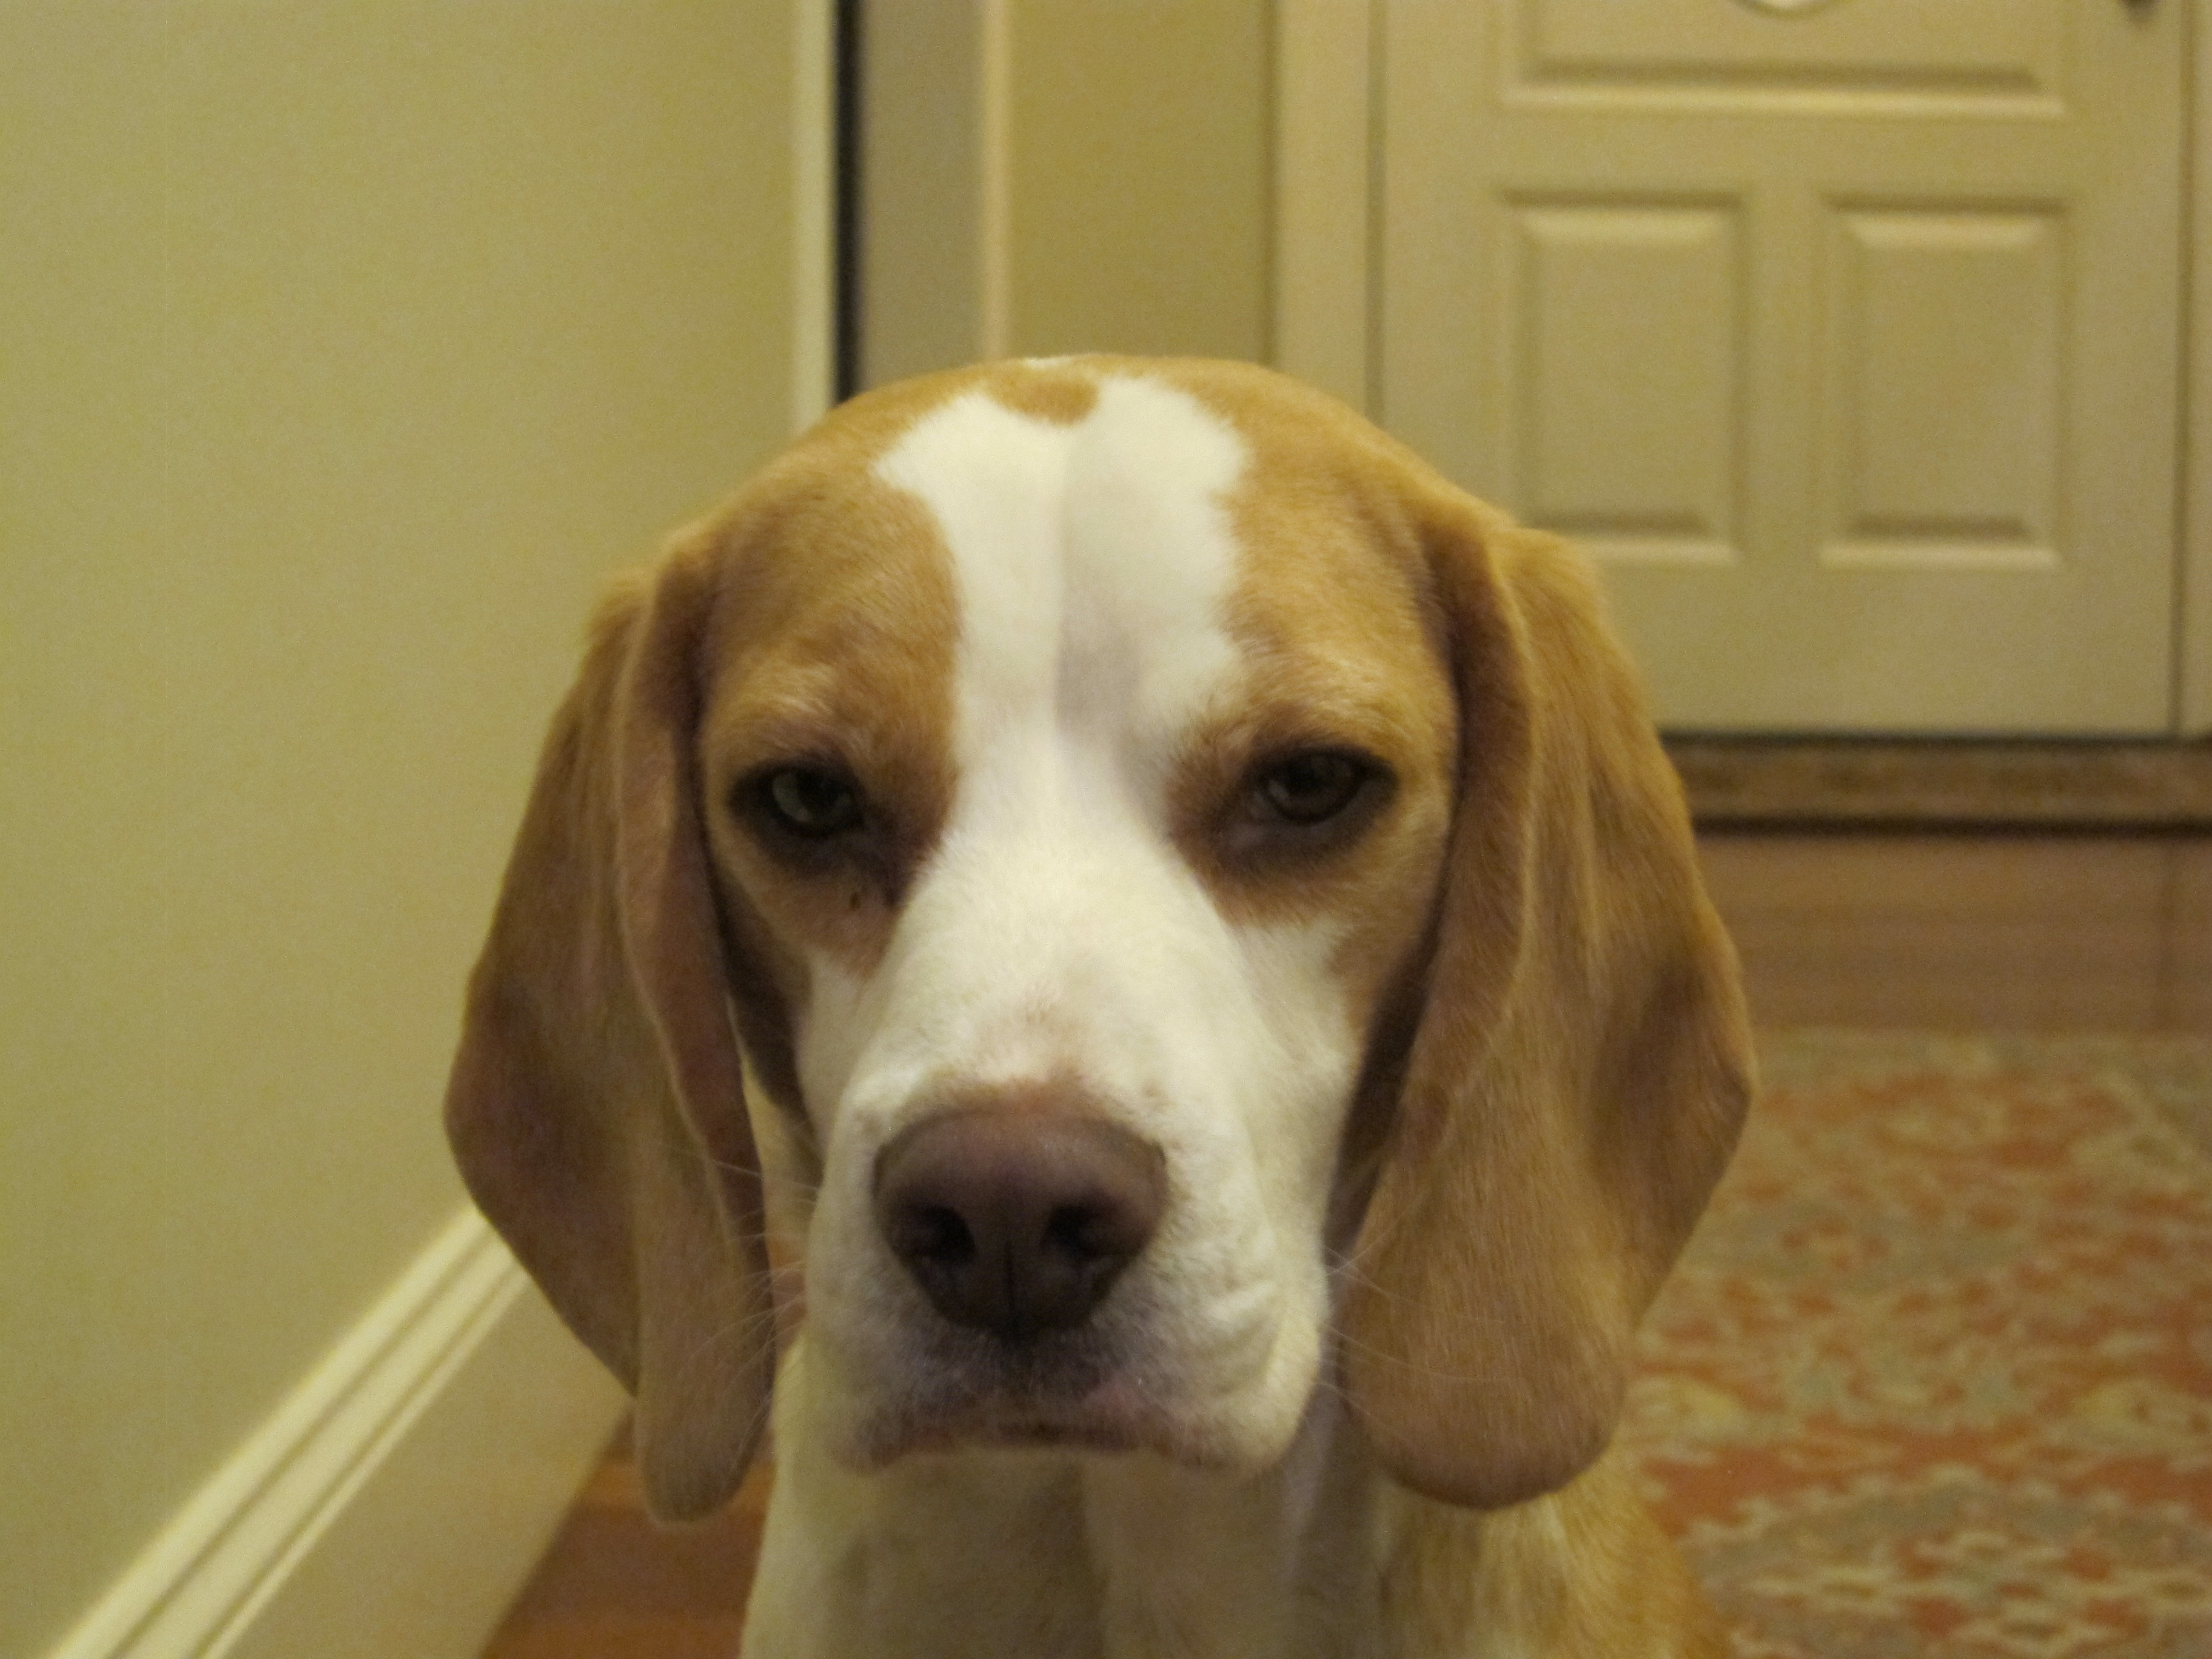 Harrison the Beagle